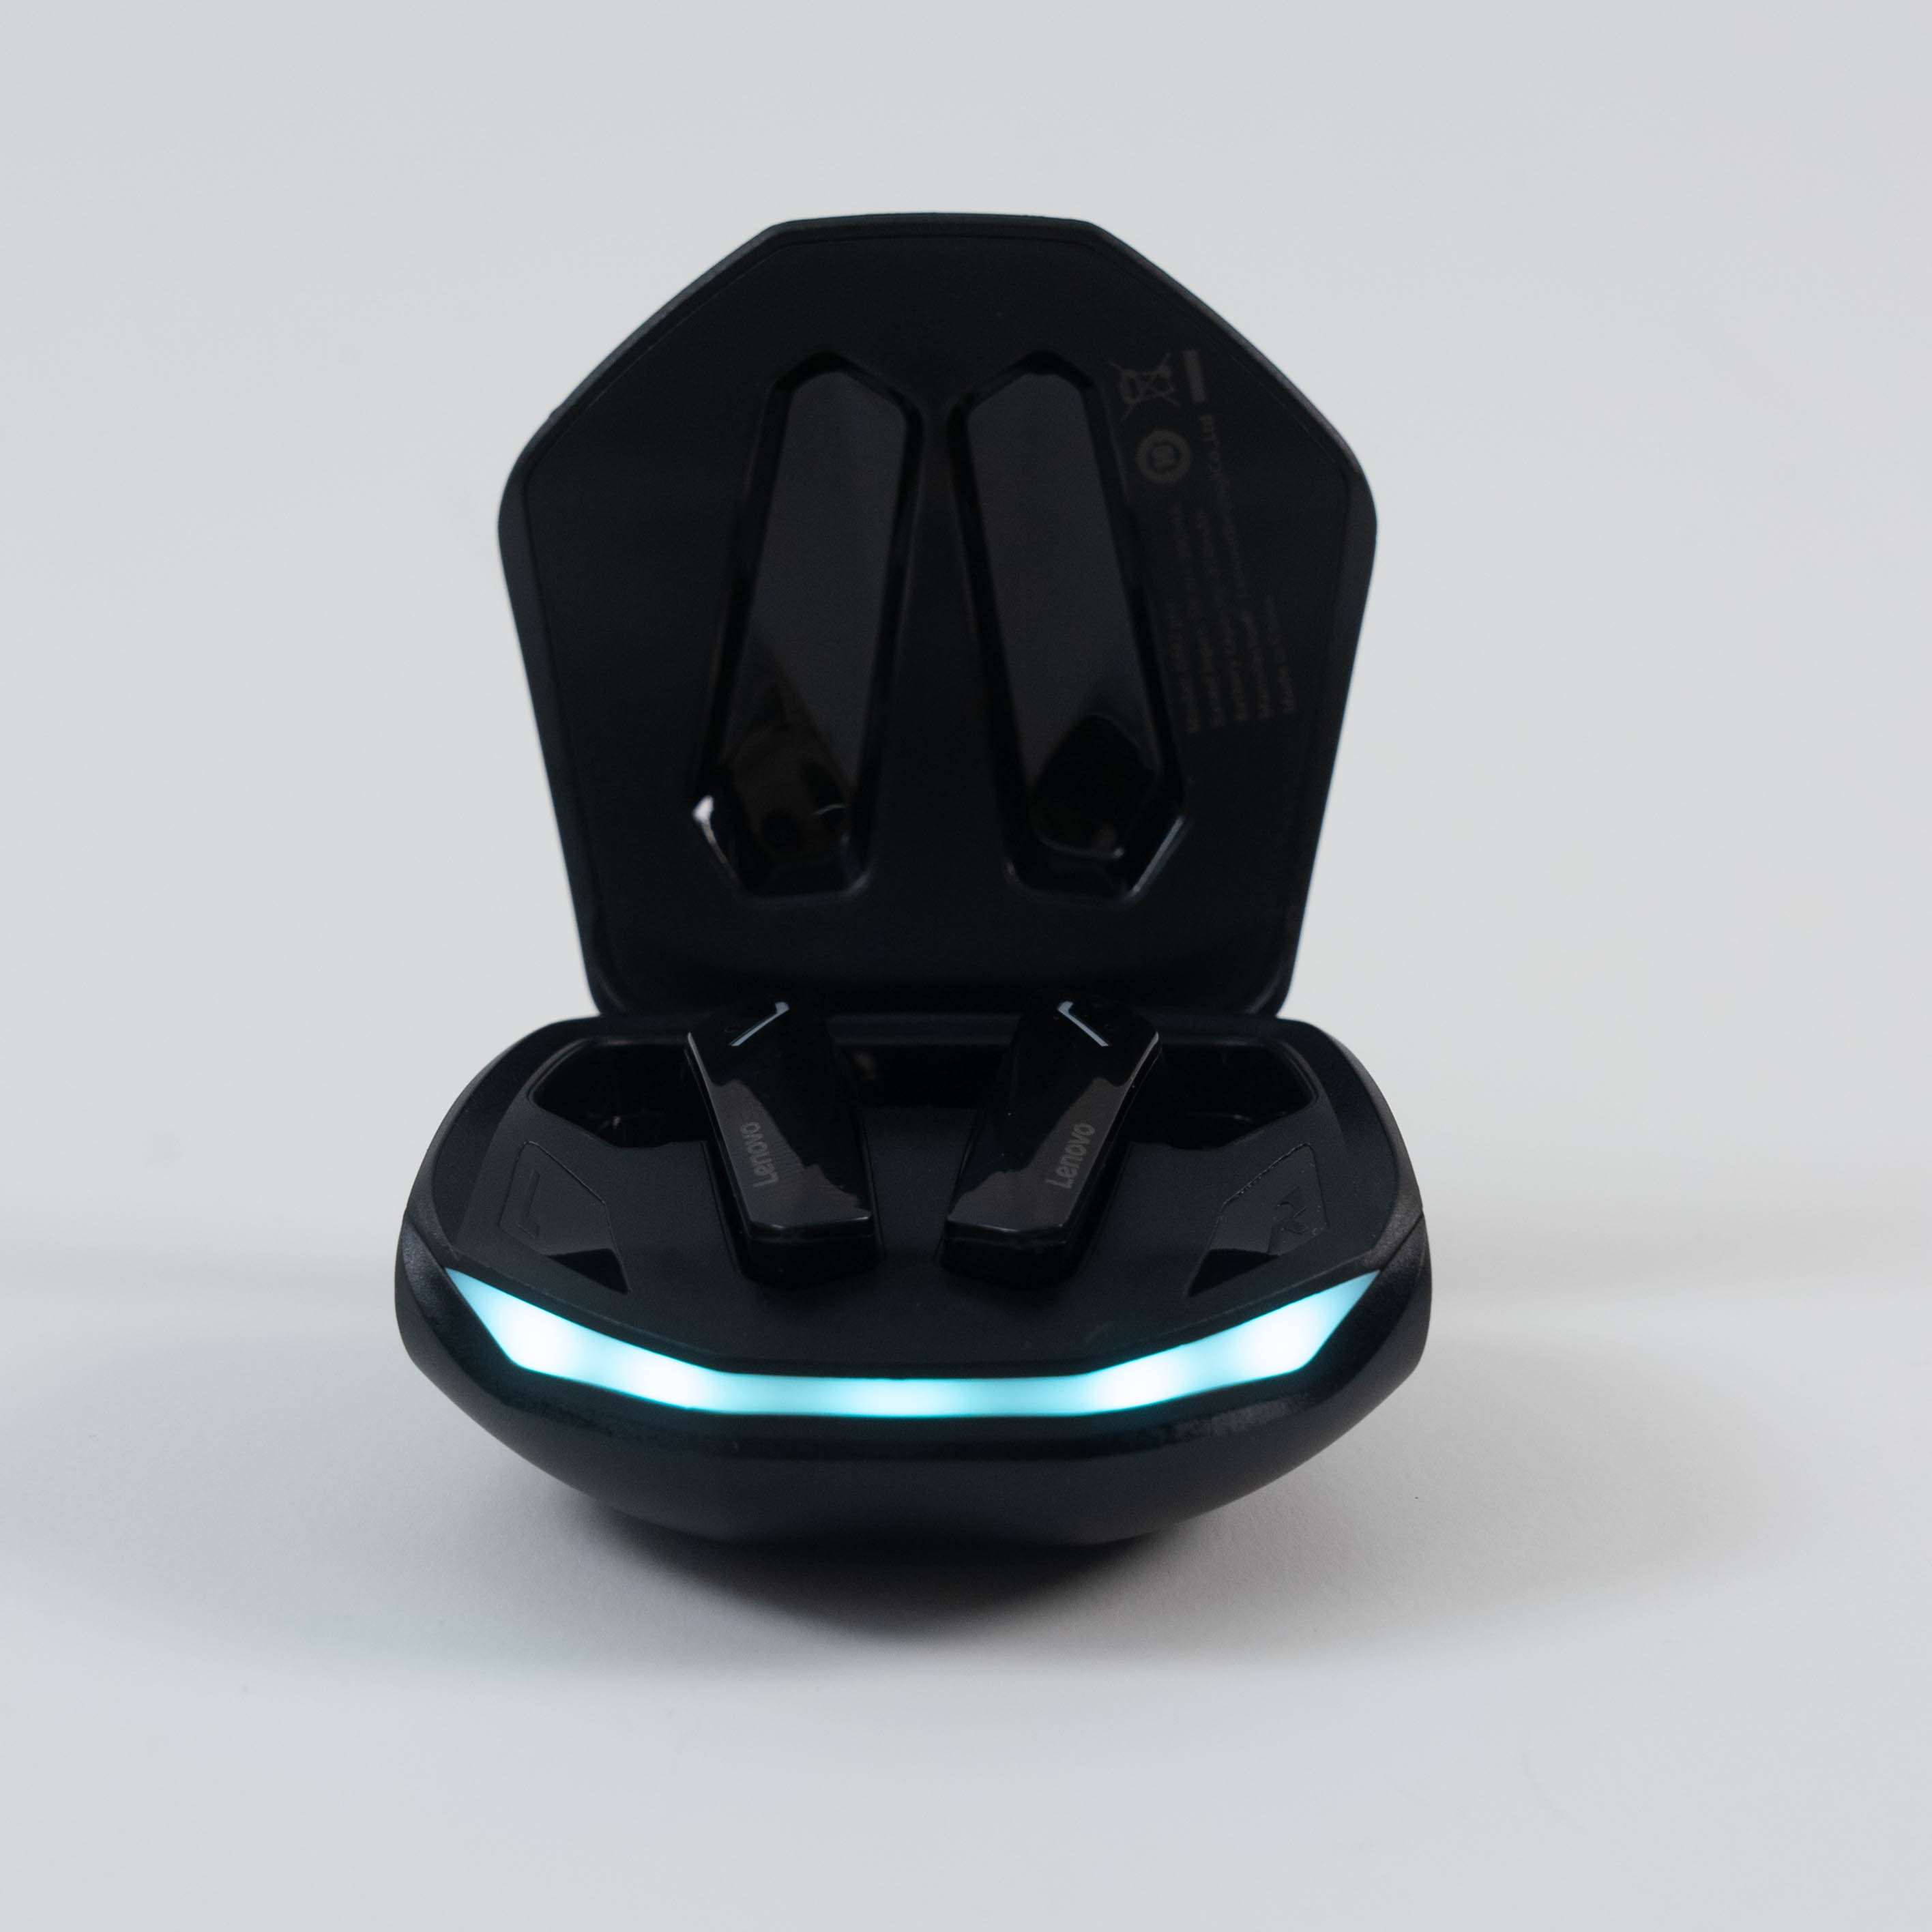 「2023最新型」Bluetoothイヤホン丨綺麗な音を味わい、ゲームに最適！|undefined